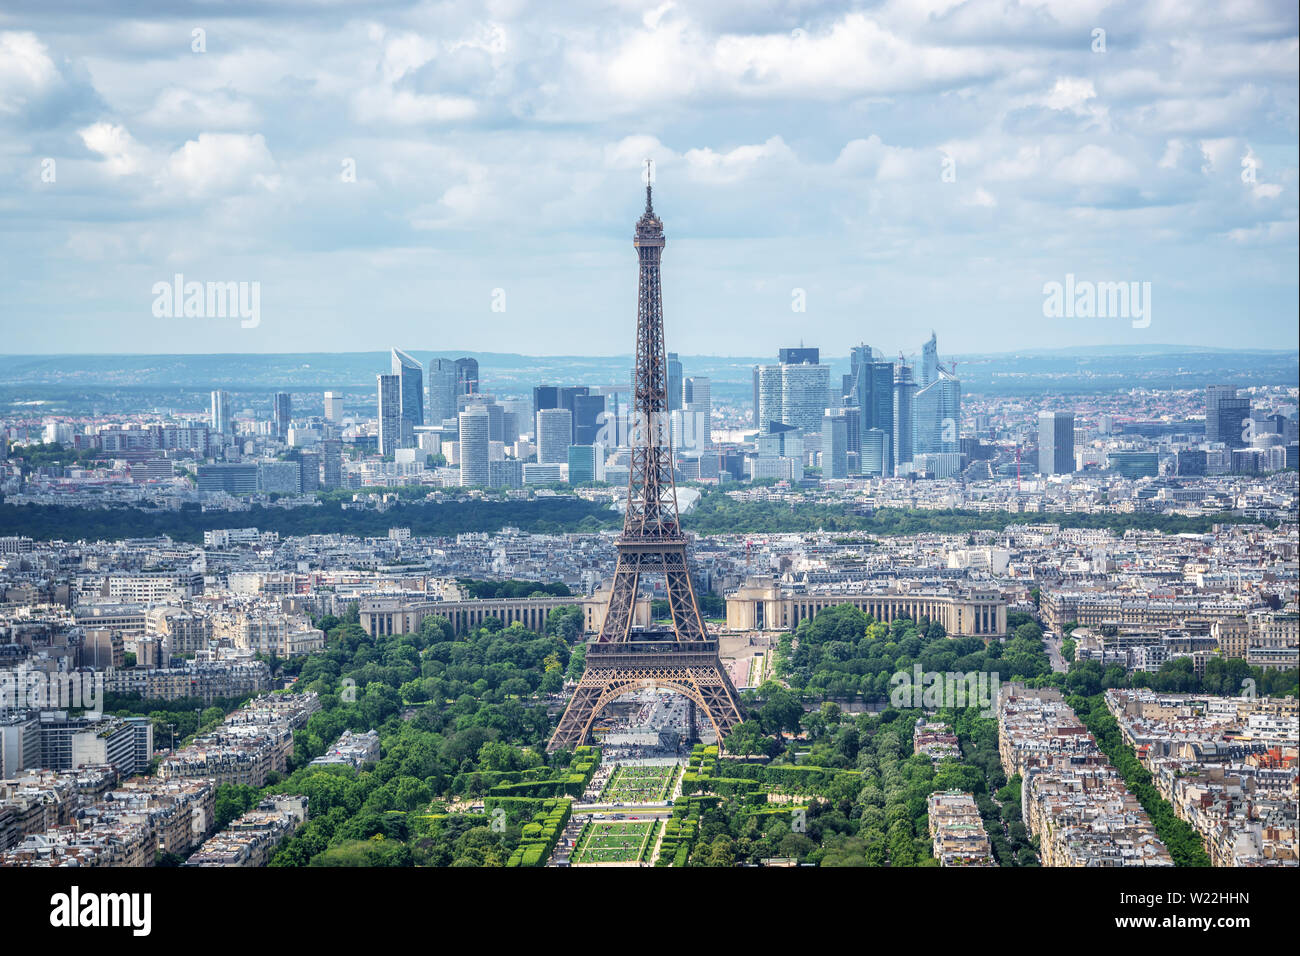 Antenna vista panoramica di Parigi con la torre Eiffel e il quartiere degli affari della Defense skyline, in Francia e in Europa city concetto di viaggio Foto Stock